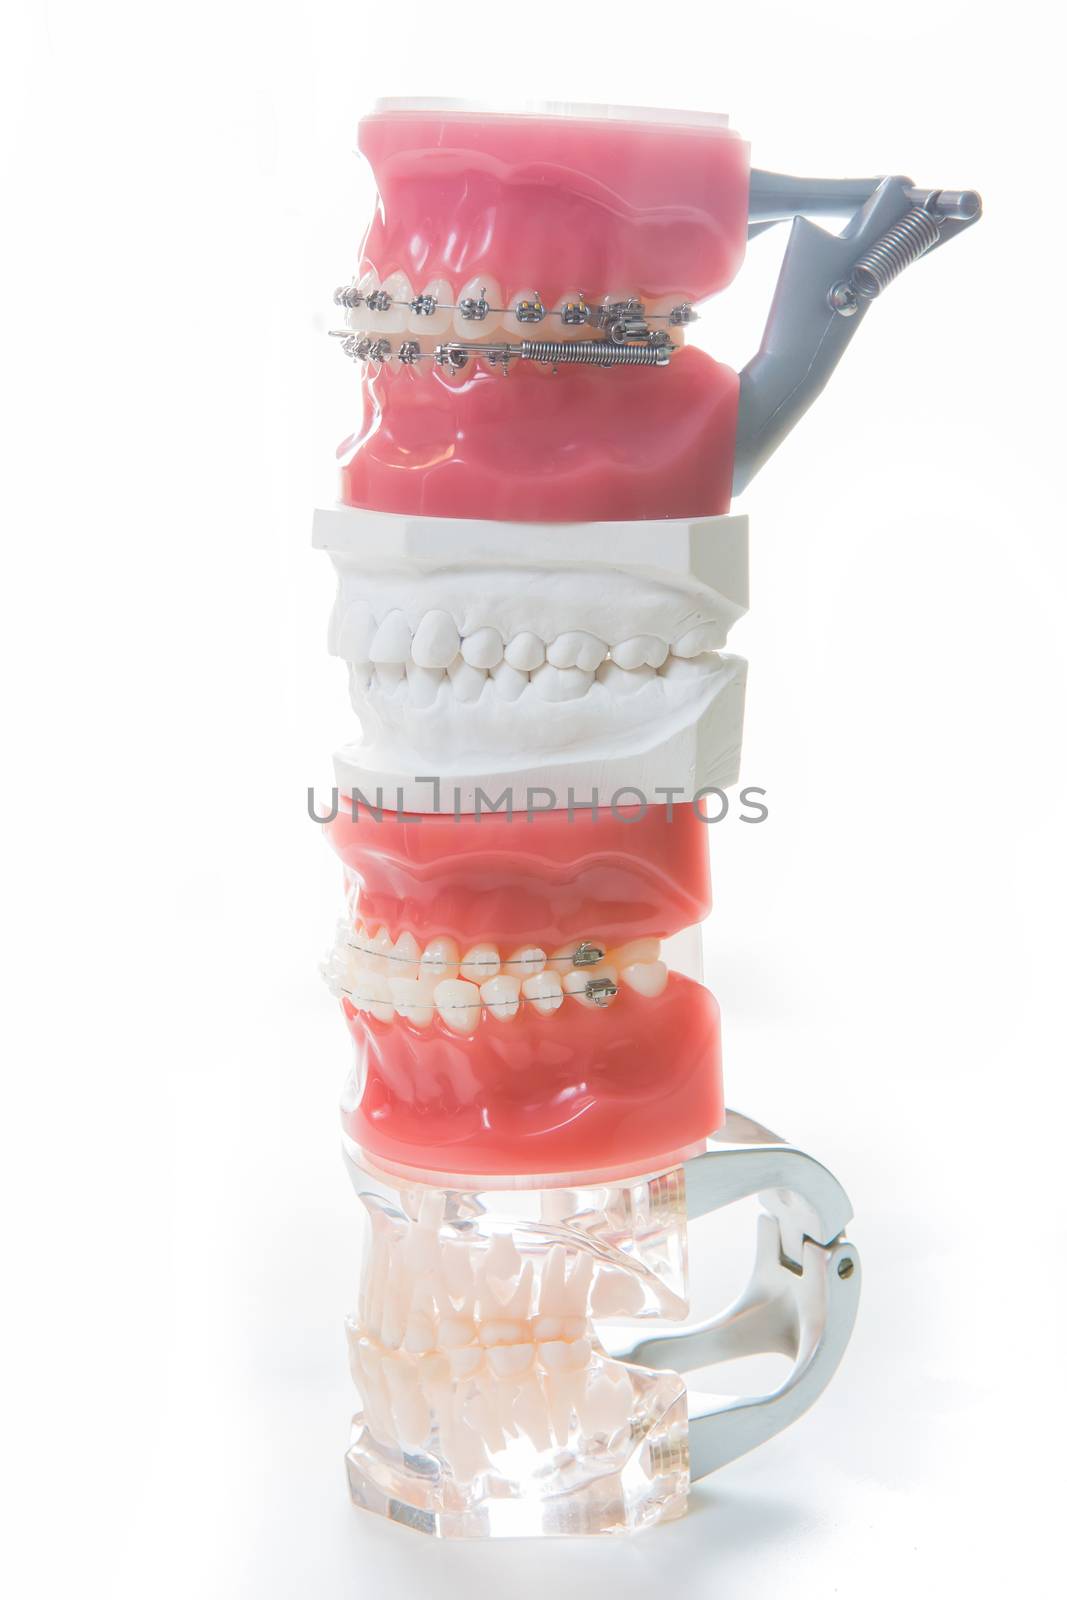 Dental model by sarymsakov